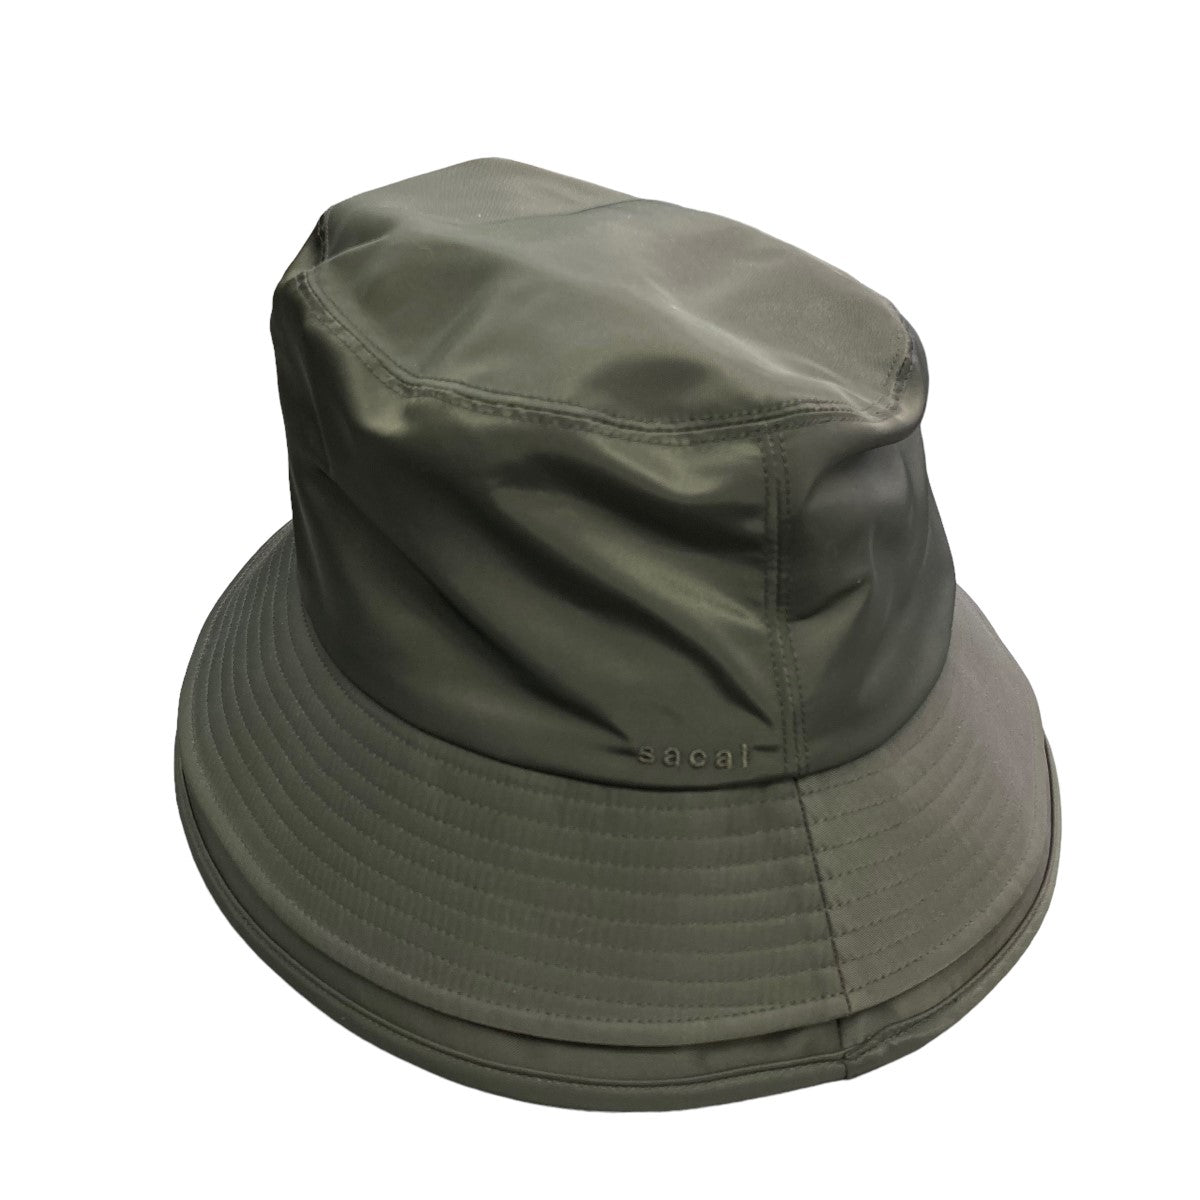 sacai(サカイ) 「Double Brim Bucket Hat」 バケットハット 23 0481S 